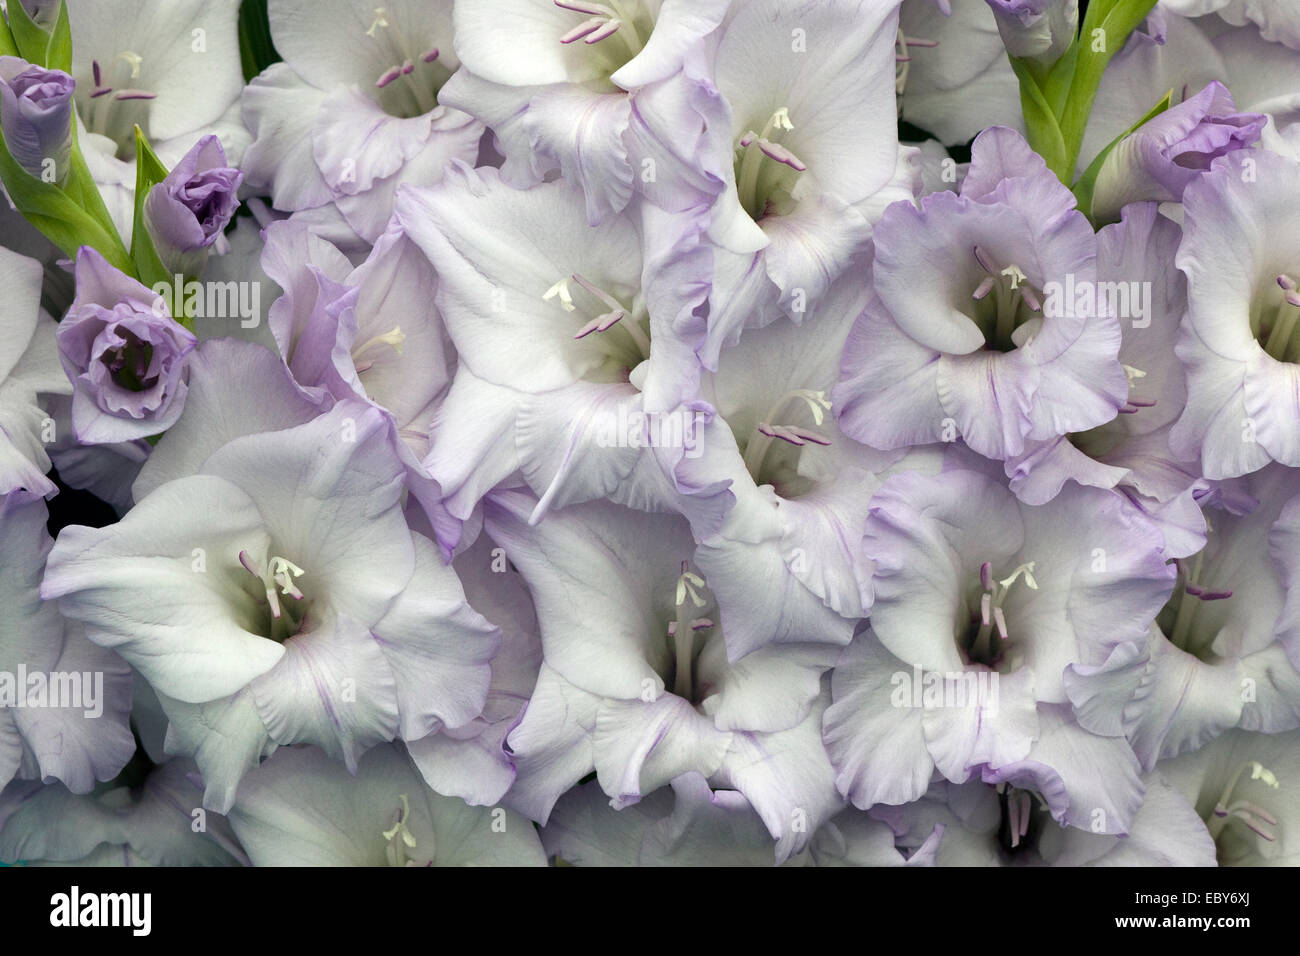 Purple and white Gladioli display Stock Photo